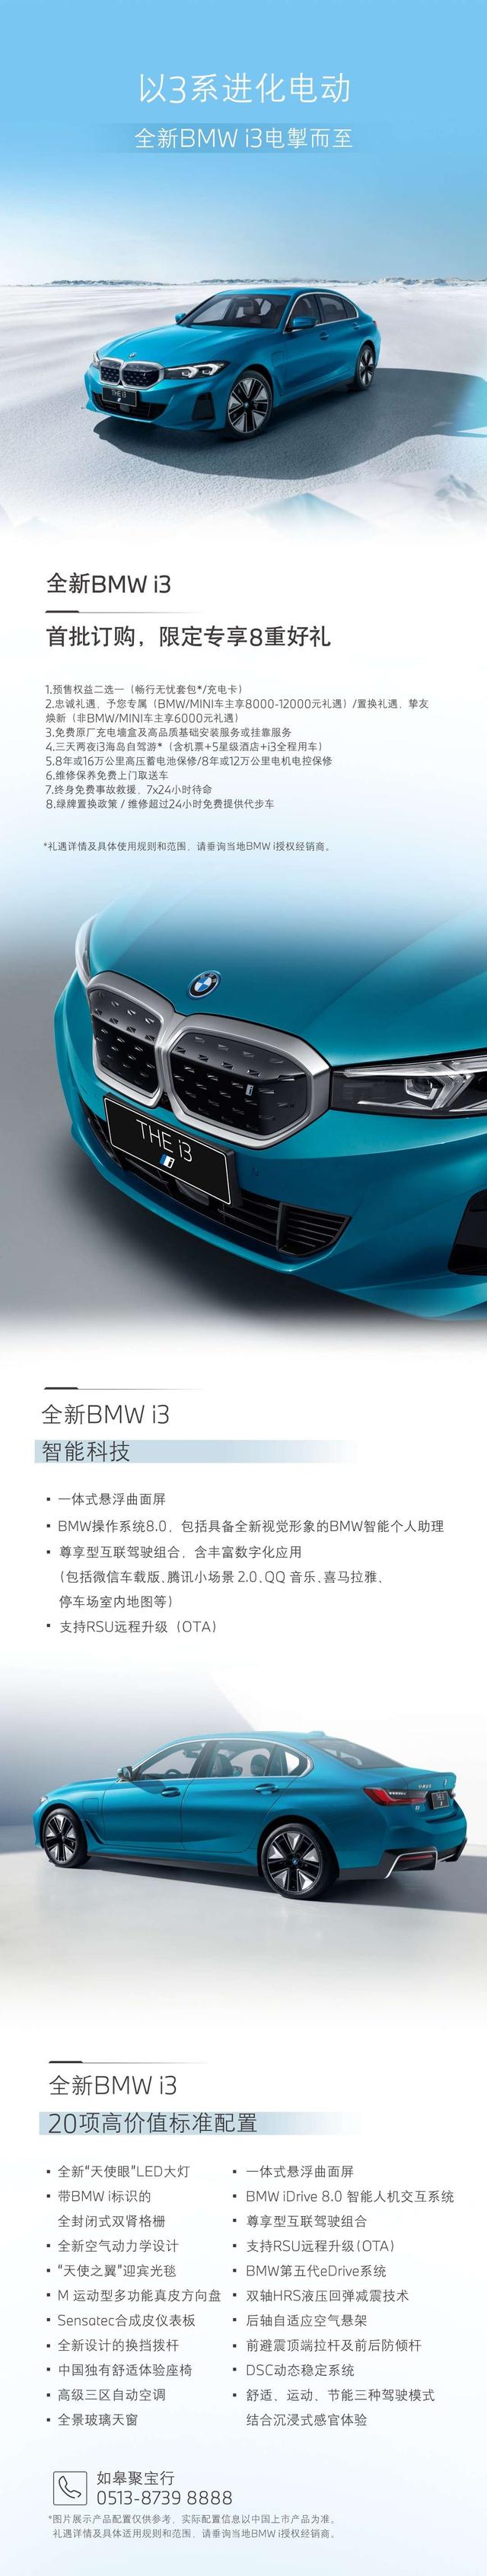 全新BMW i3：智能科技丨预定专享8重礼遇